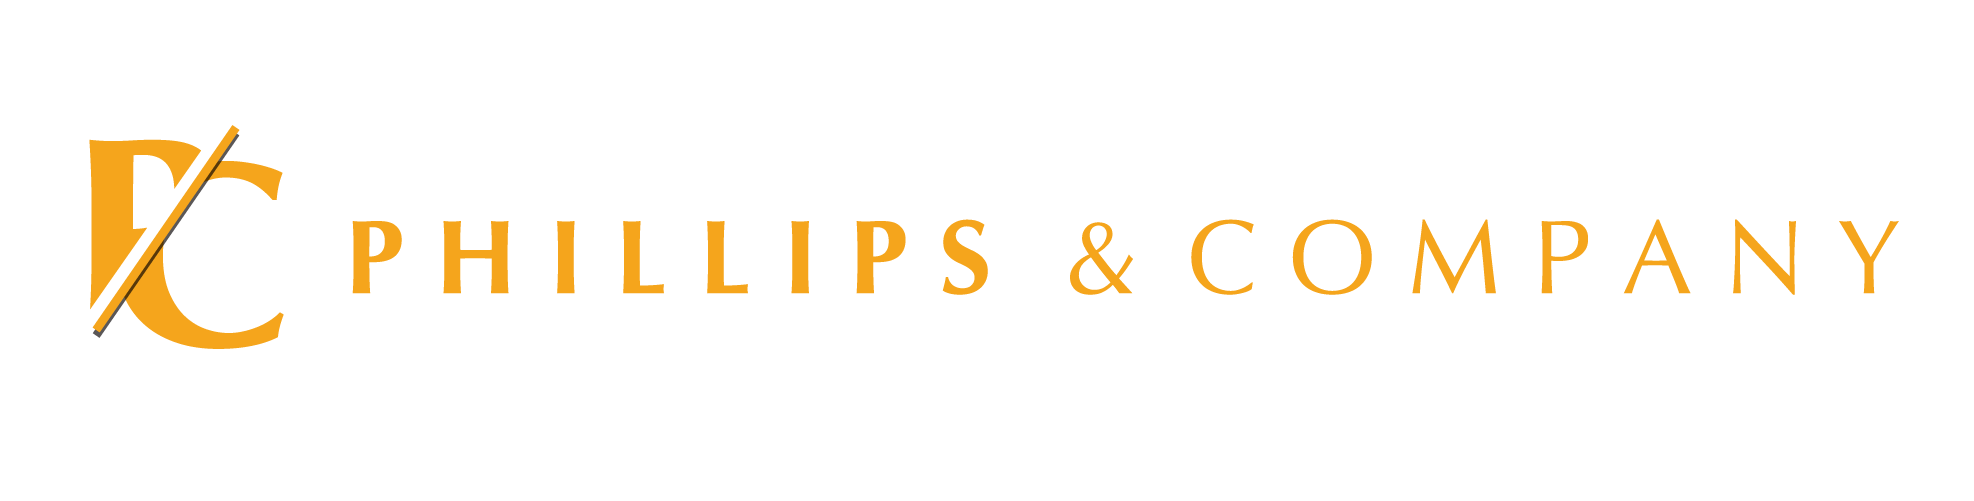 Phillips & Company logo